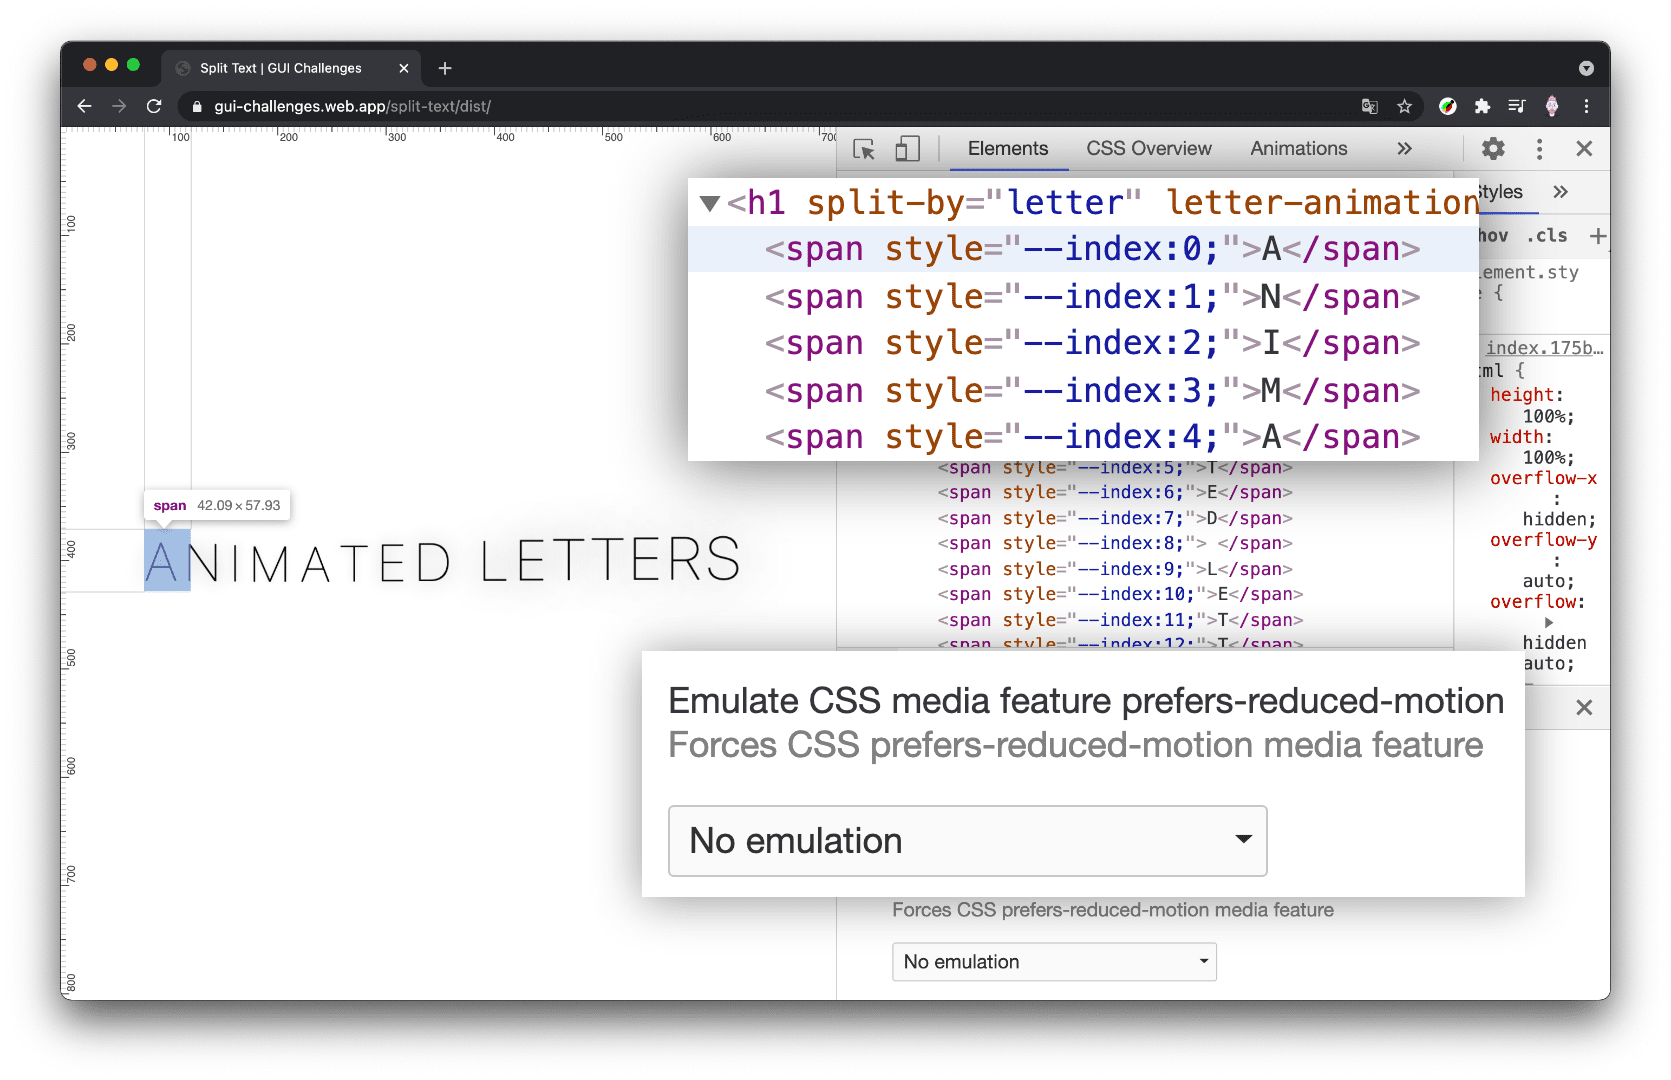 [Elements] パネルが開き、軽減されたモーションが [reduce] に設定され、h1 が分割されていない状態になっている、Chrome DevTools のスクリーンショット